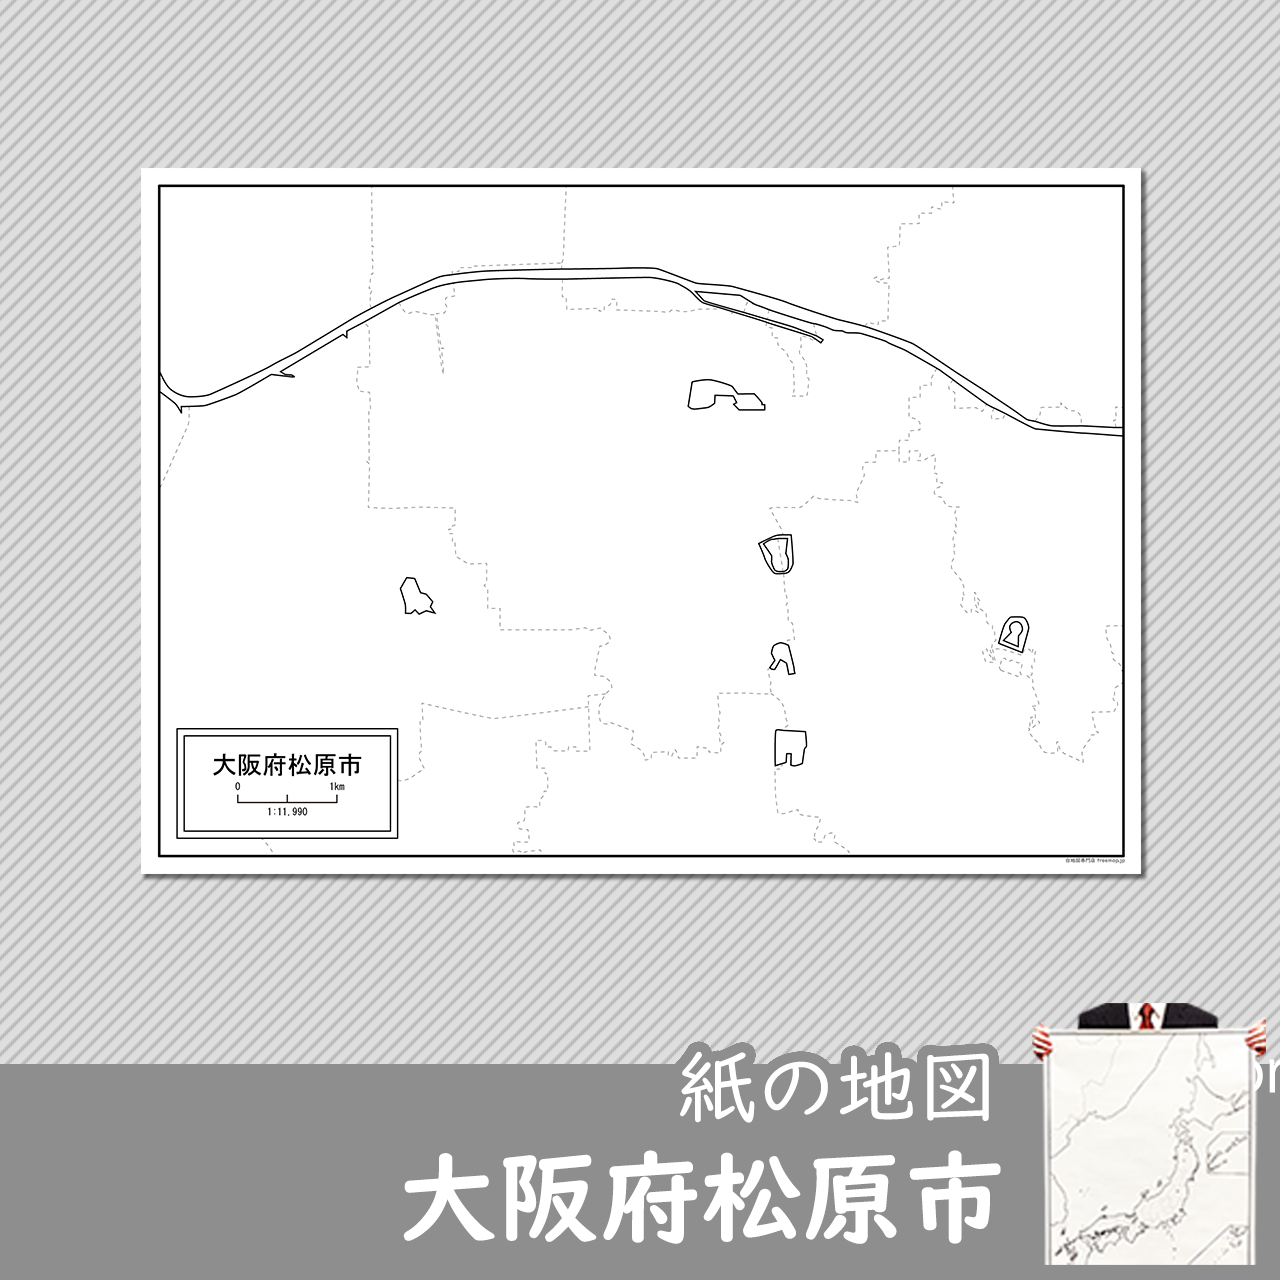 松原市の紙の白地図のサムネイル